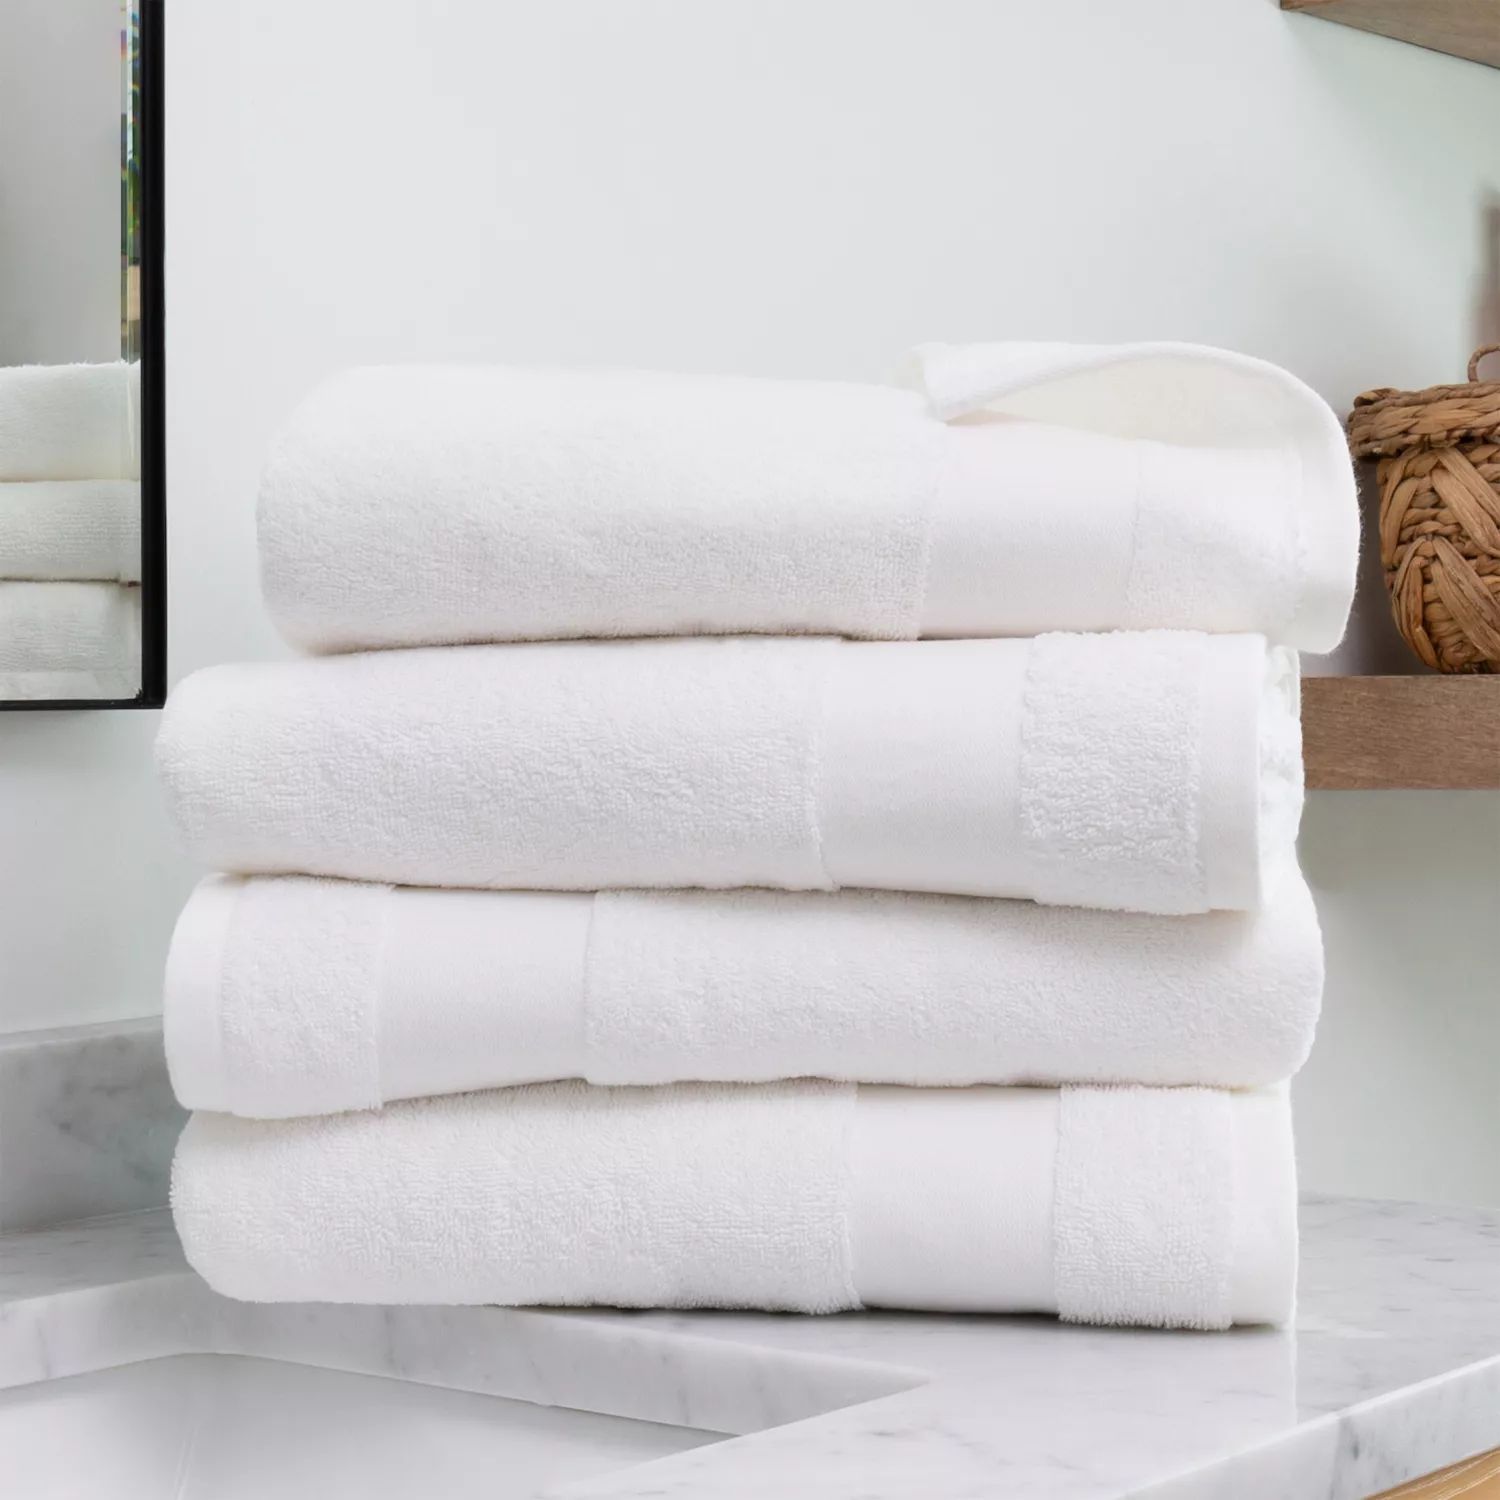 4 упаковки полотенец из 100% хлопка, все необходимое для домашней ванной комнаты, белый